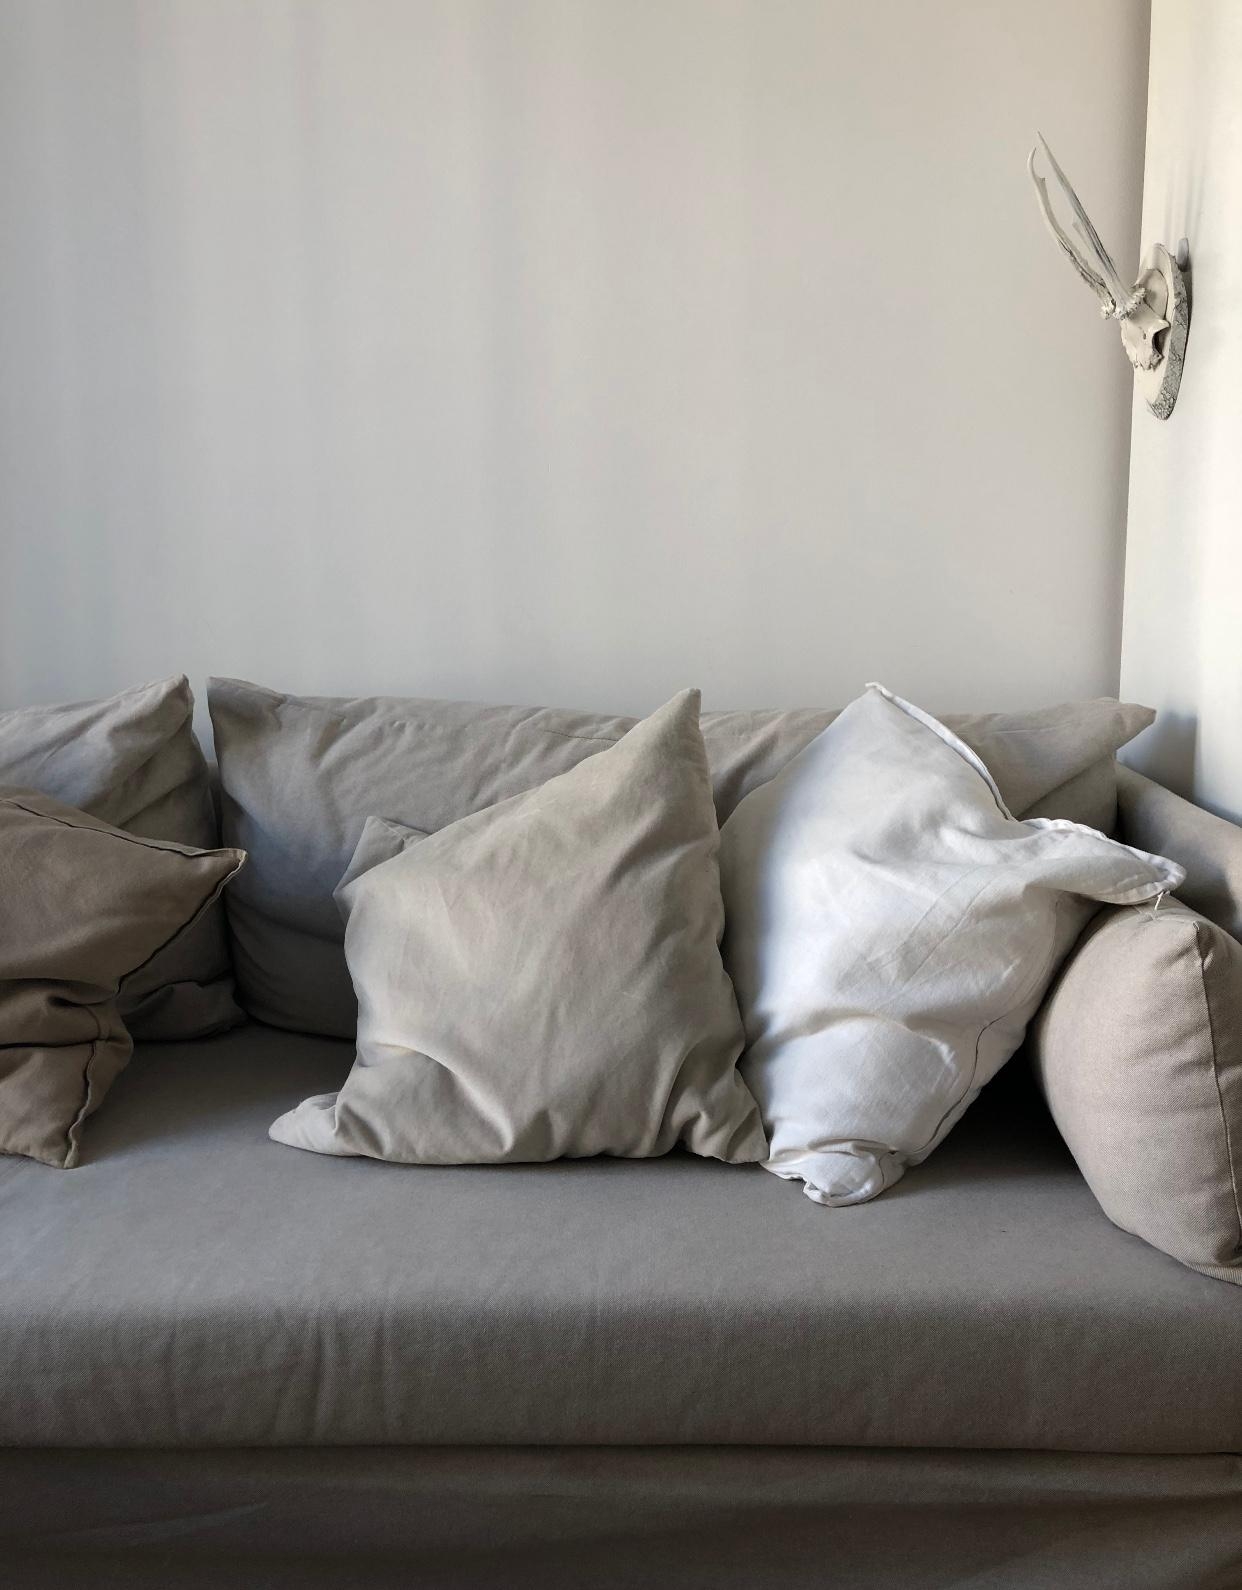 Couching #sofa #couch #toninton #beige #sofabeige #scandi #naturtöne #geweih